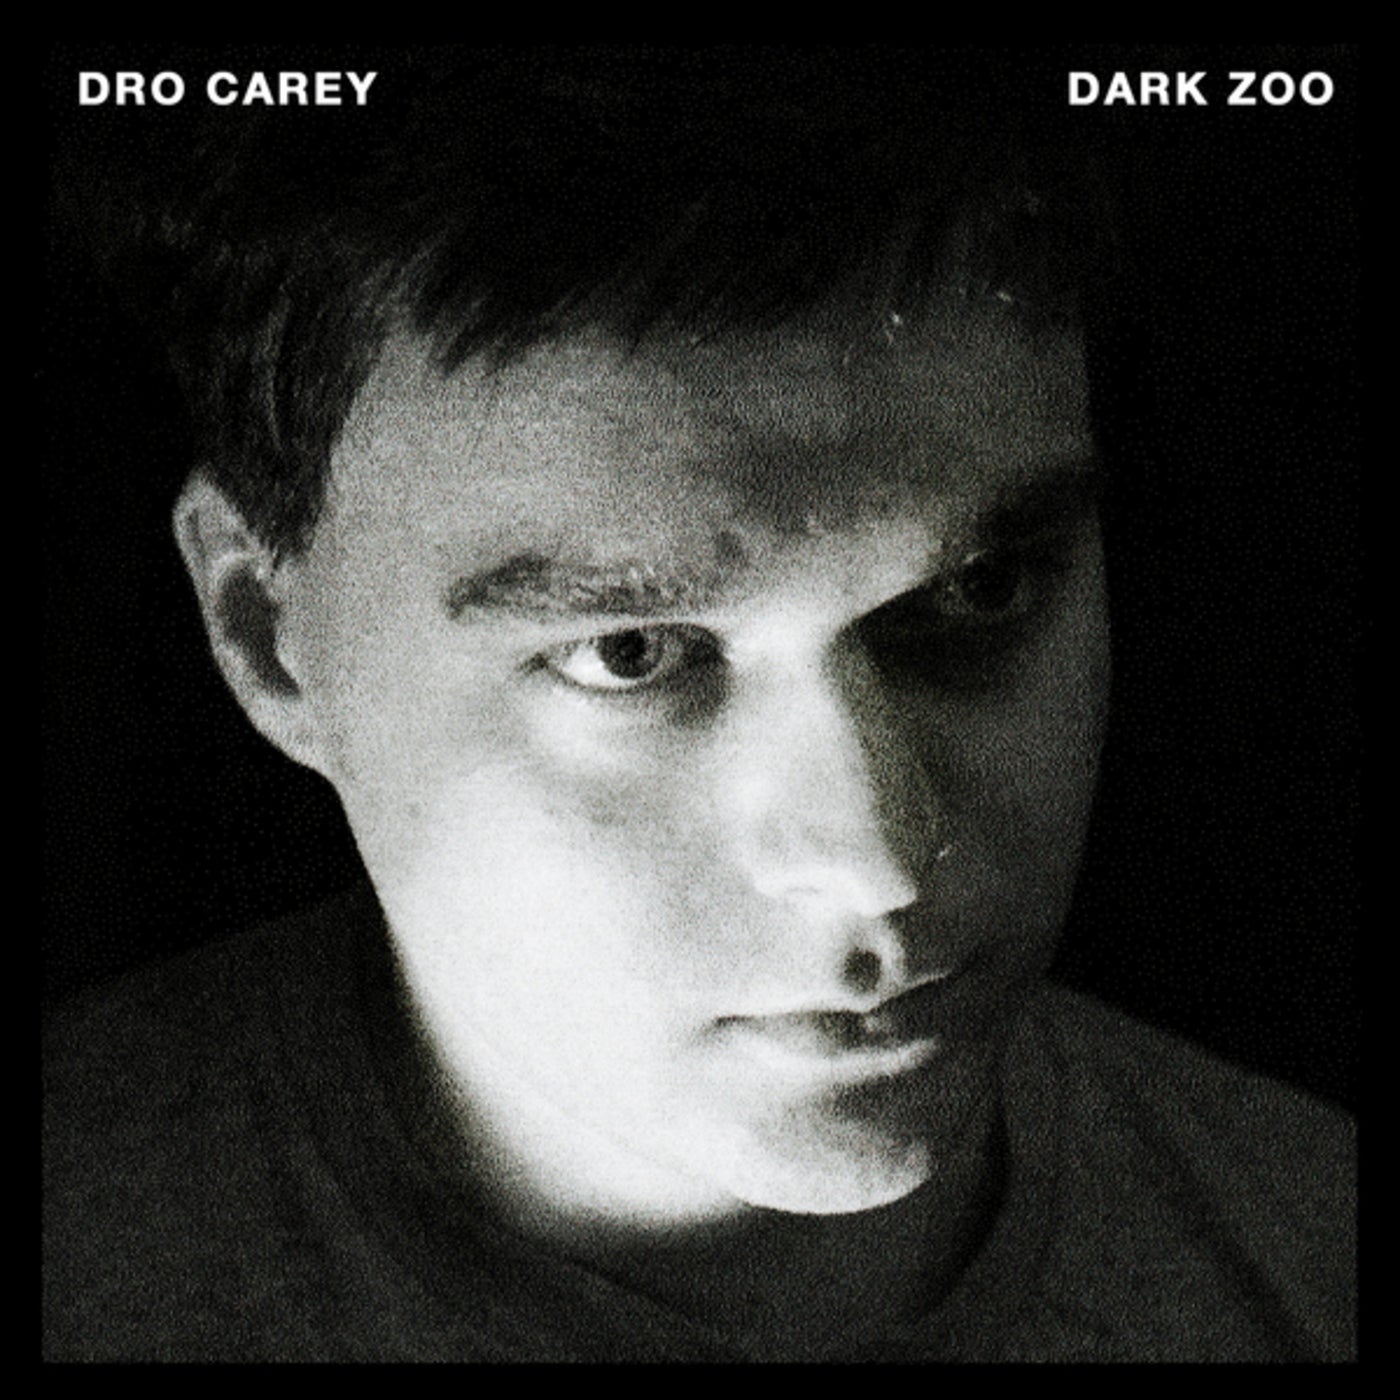 Dark Zoo